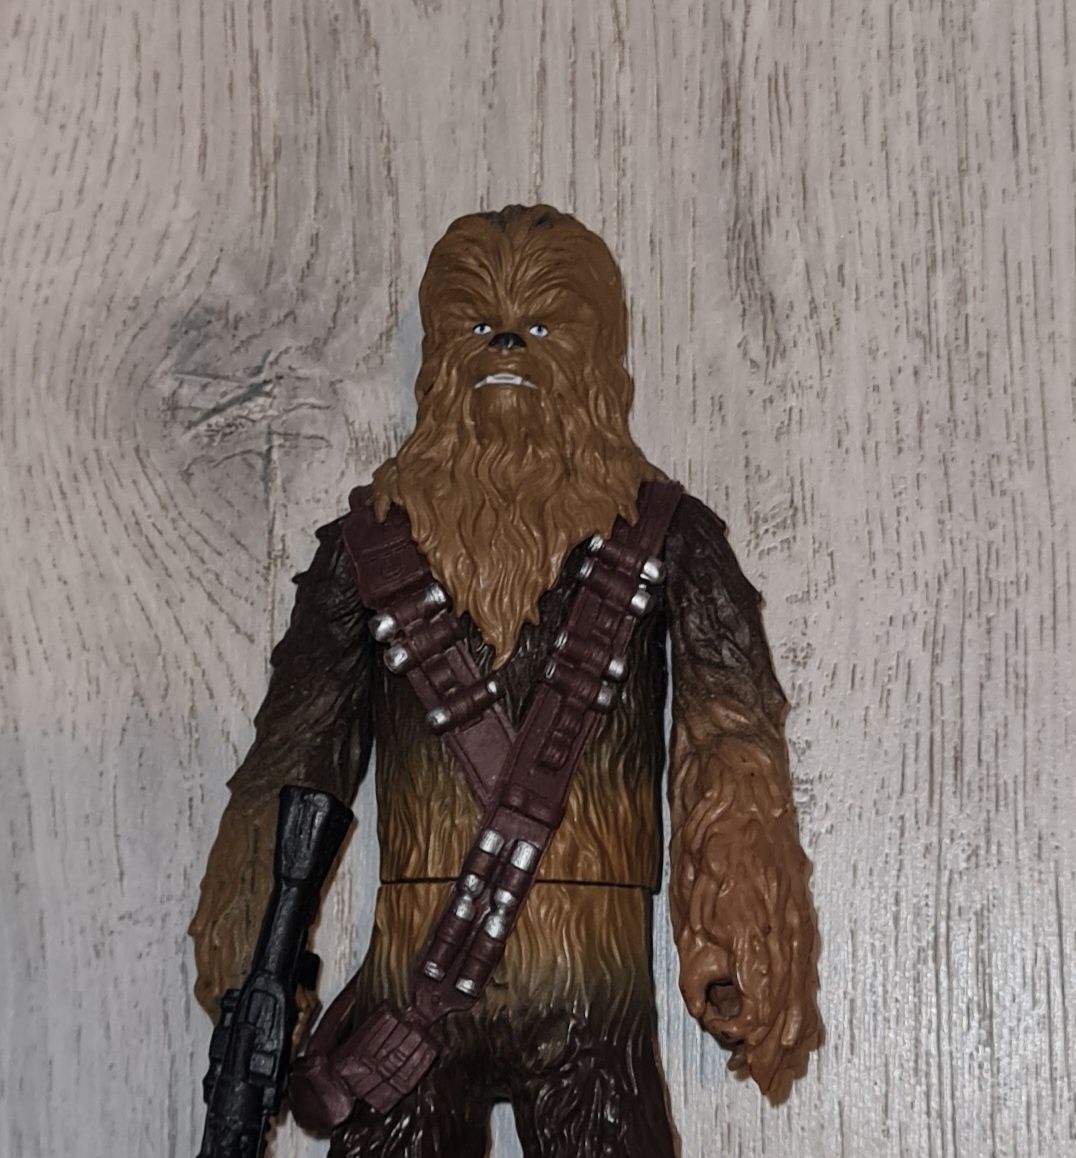 Figurka kolekcjonerska Star Wars Chewbacca